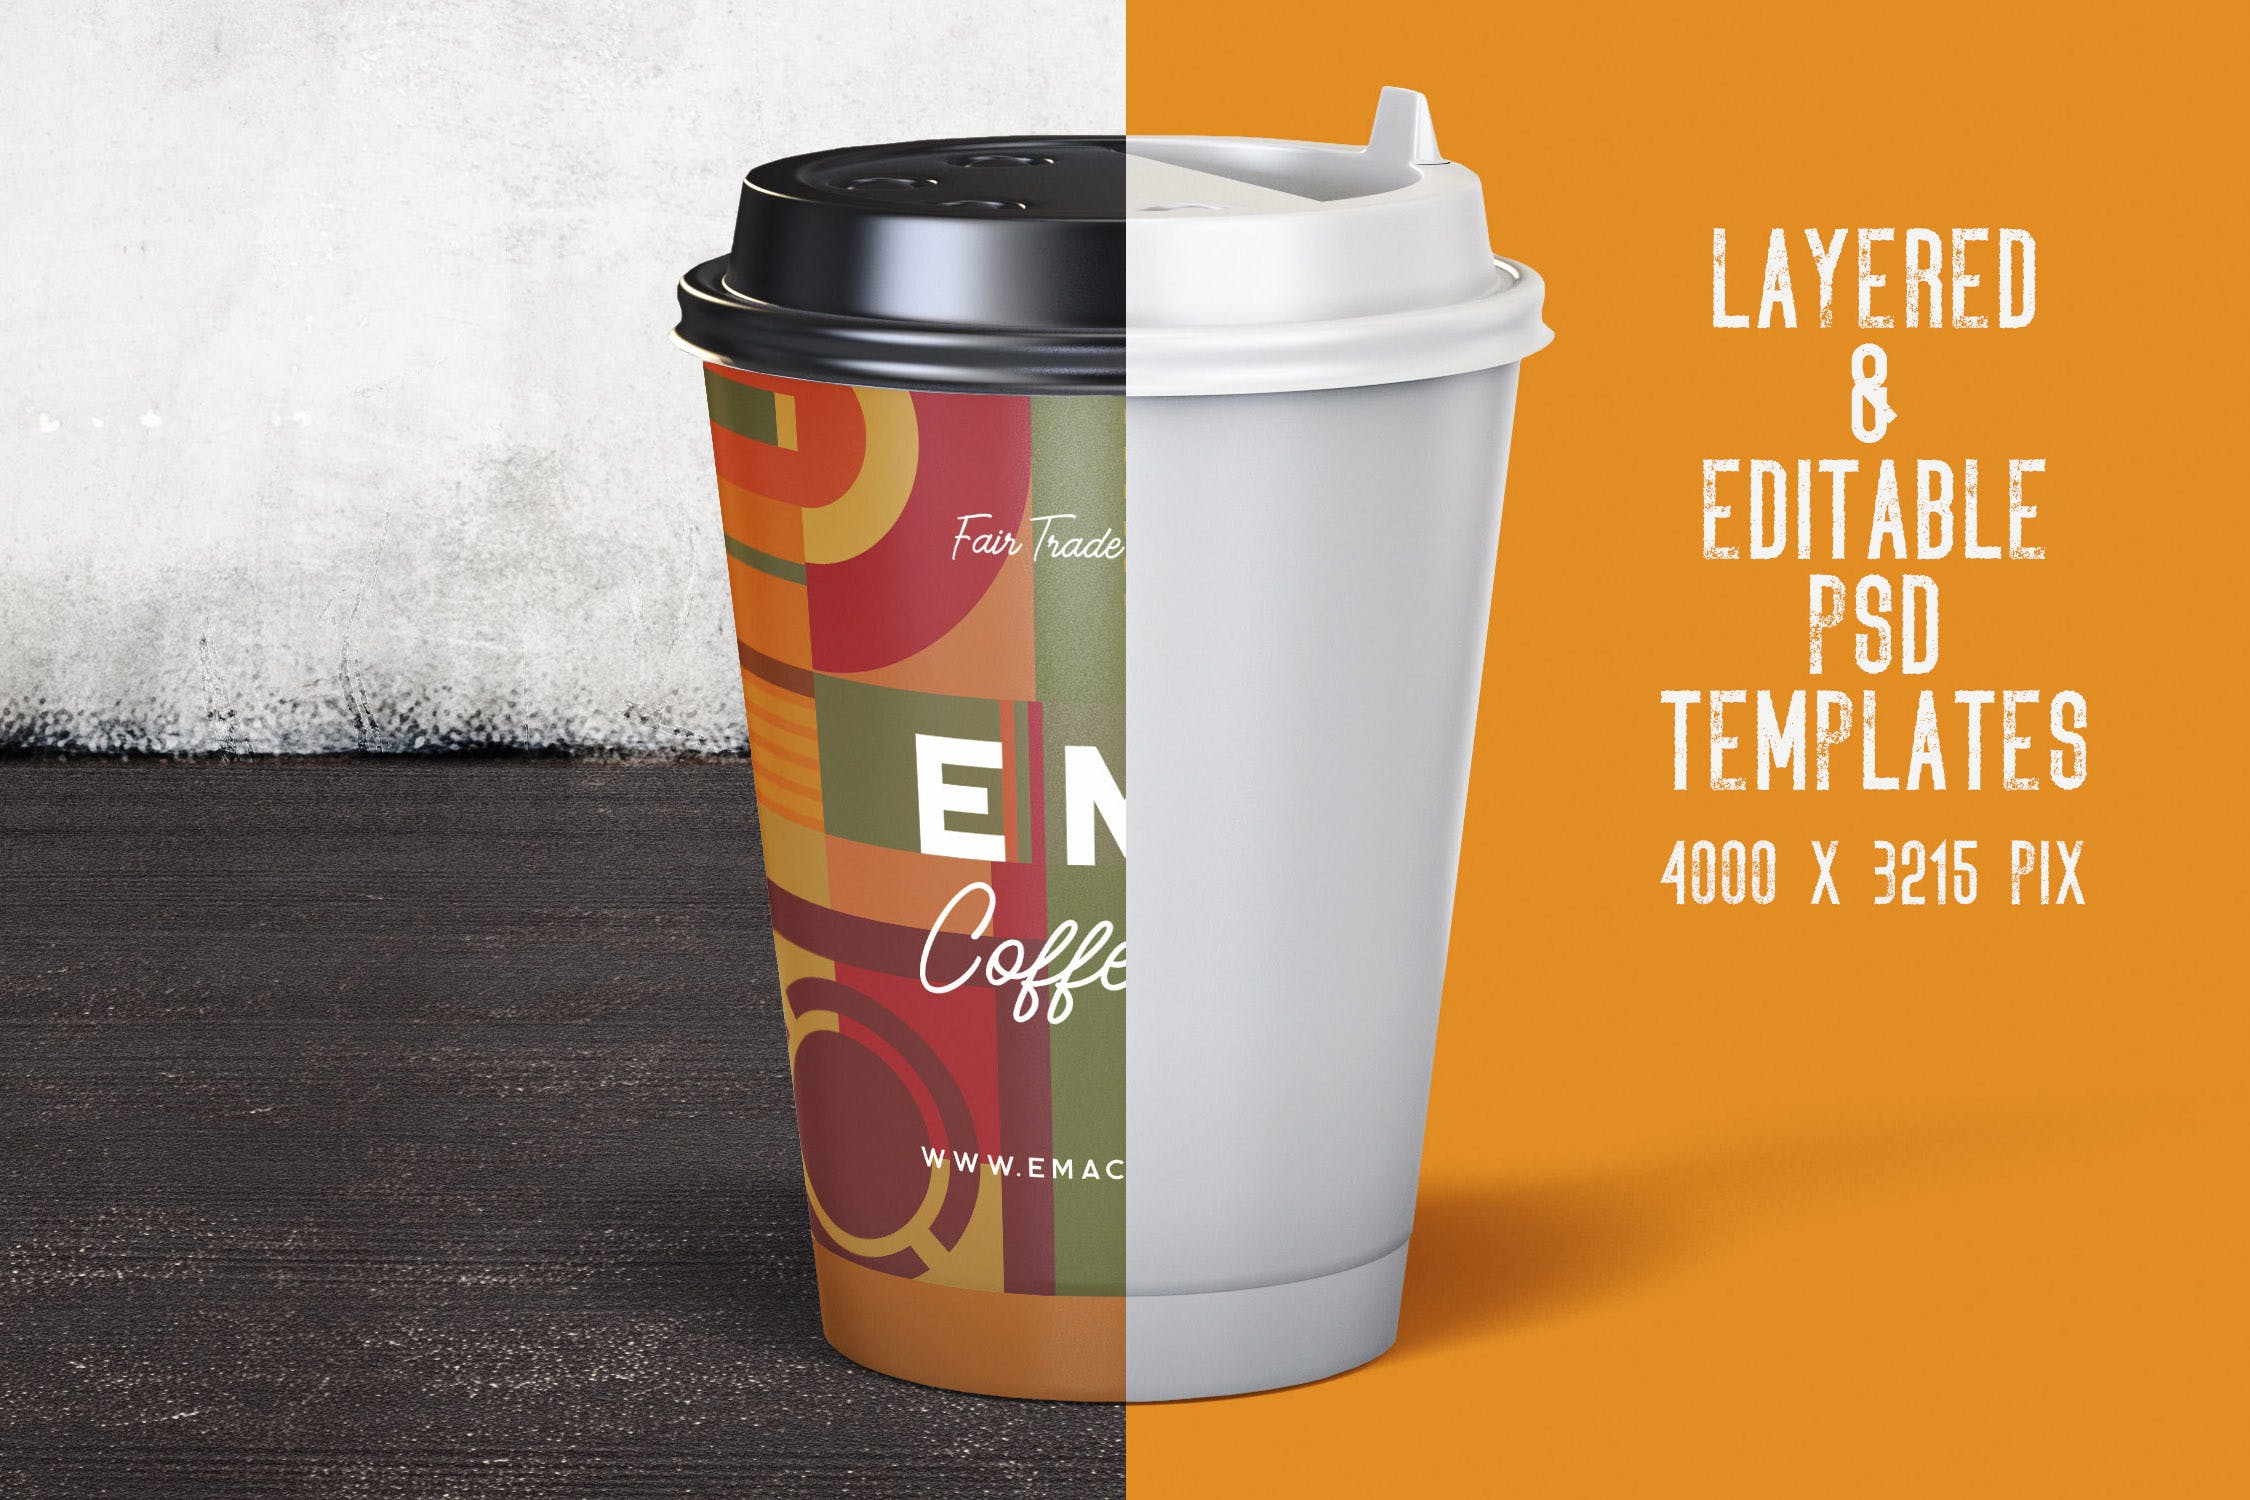 8个咖啡纸杯外观设计效果图素材中国精选 8 Coffee Paper Cup Mockups插图(1)